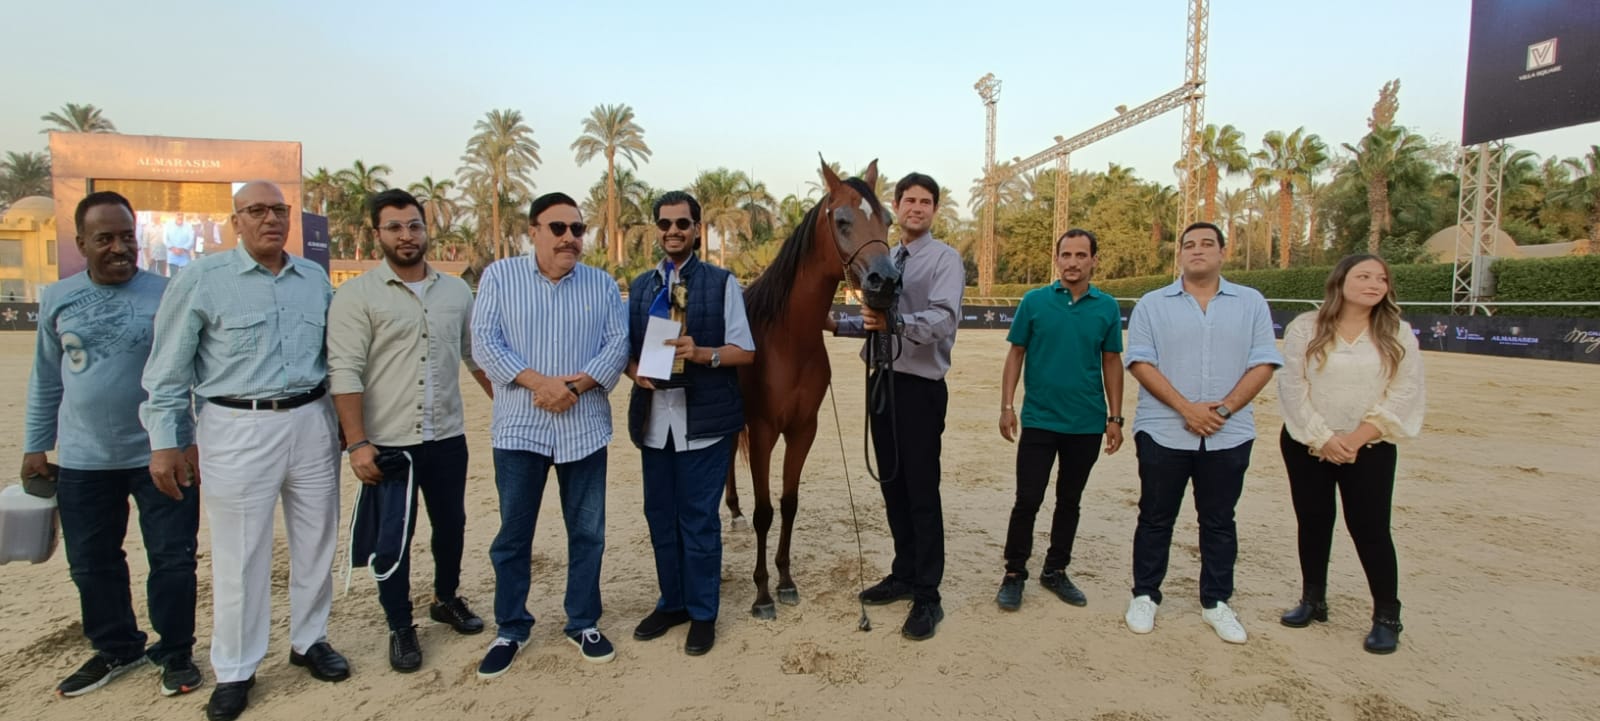 المهرة نواف النايف تفوز بالمركز الأول في بطولة مراسم رباب للخيول العربية المصرية الأصيلة